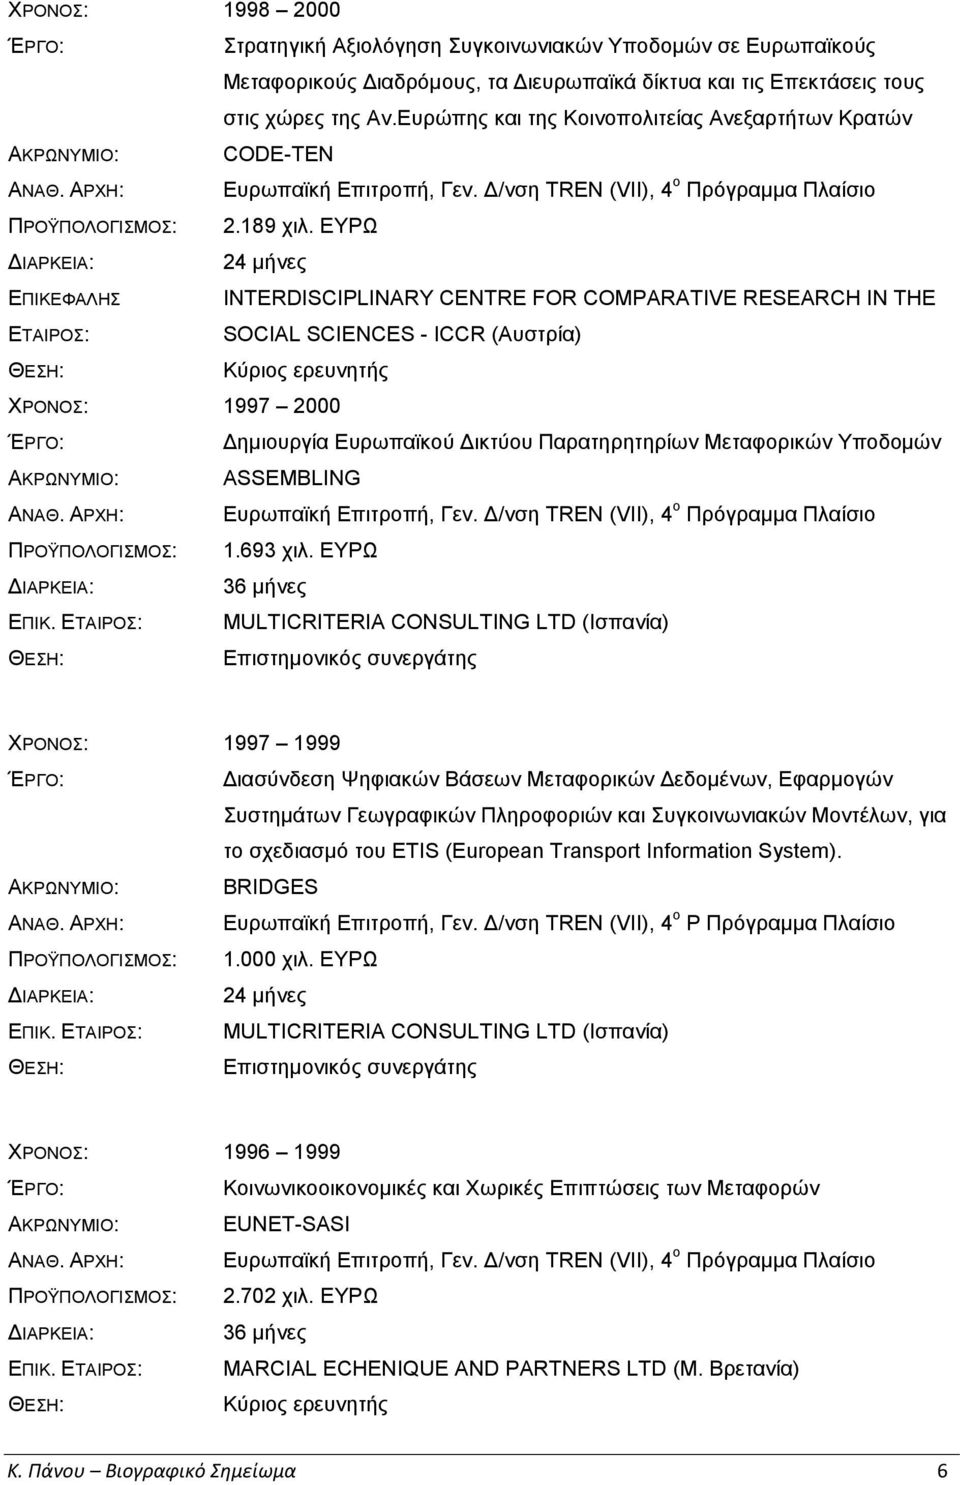 ΕΥΡΩ 24 μήνες ΕΠΙΚΕΦΑΛΗΣ ΕΤΑΙΡΟΣ: INTERDISCIPLINARY CENTRE FOR COMPARATIVE RESEARCH IN THE SOCIAL SCIENCES - ICCR (Αυστρία) Κύριος ερευνητής ΧΡΟΝΟΣ: 1997 2000 Δημιουργία Ευρωπαϊκού Δικτύου